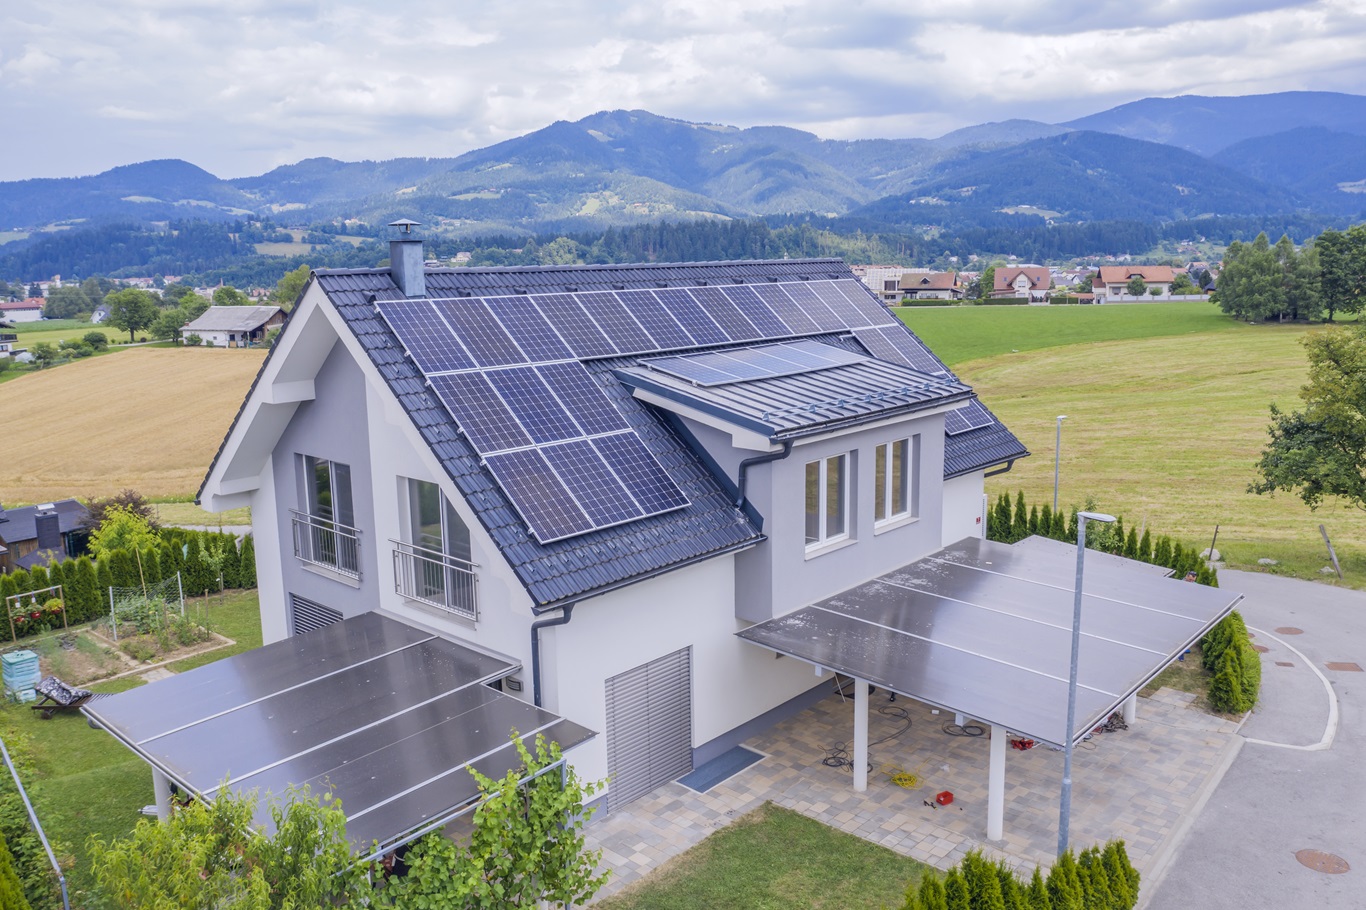 va loan requirements solar panels